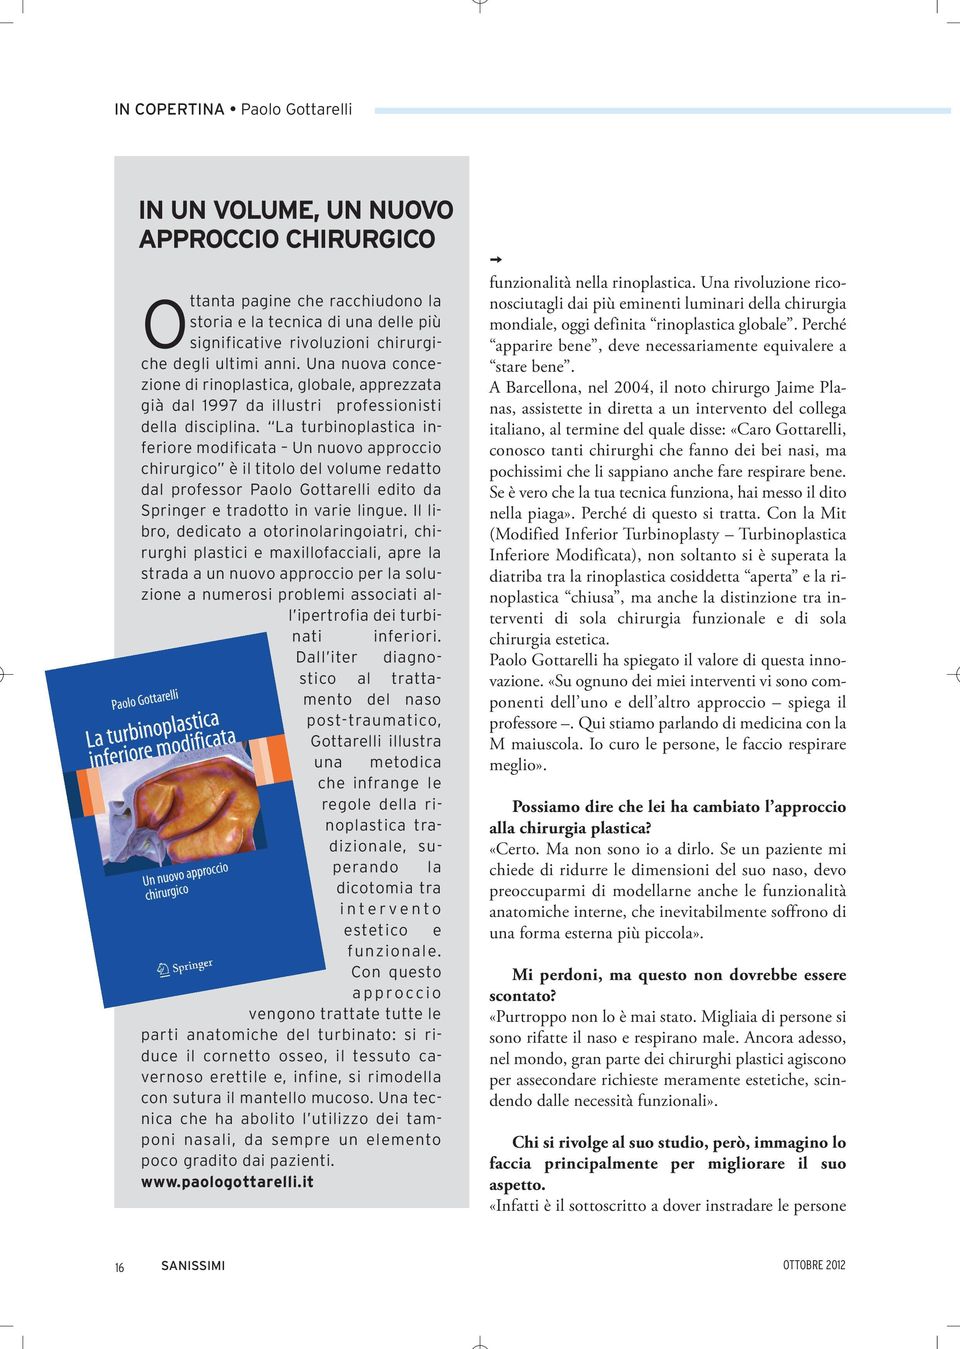 La turbinoplastica inferiore modificata Un nuovo approccio chirurgico è il titolo del volume redatto dal professor Paolo Gottarelli edito da Springer e tradotto in varie lingue.